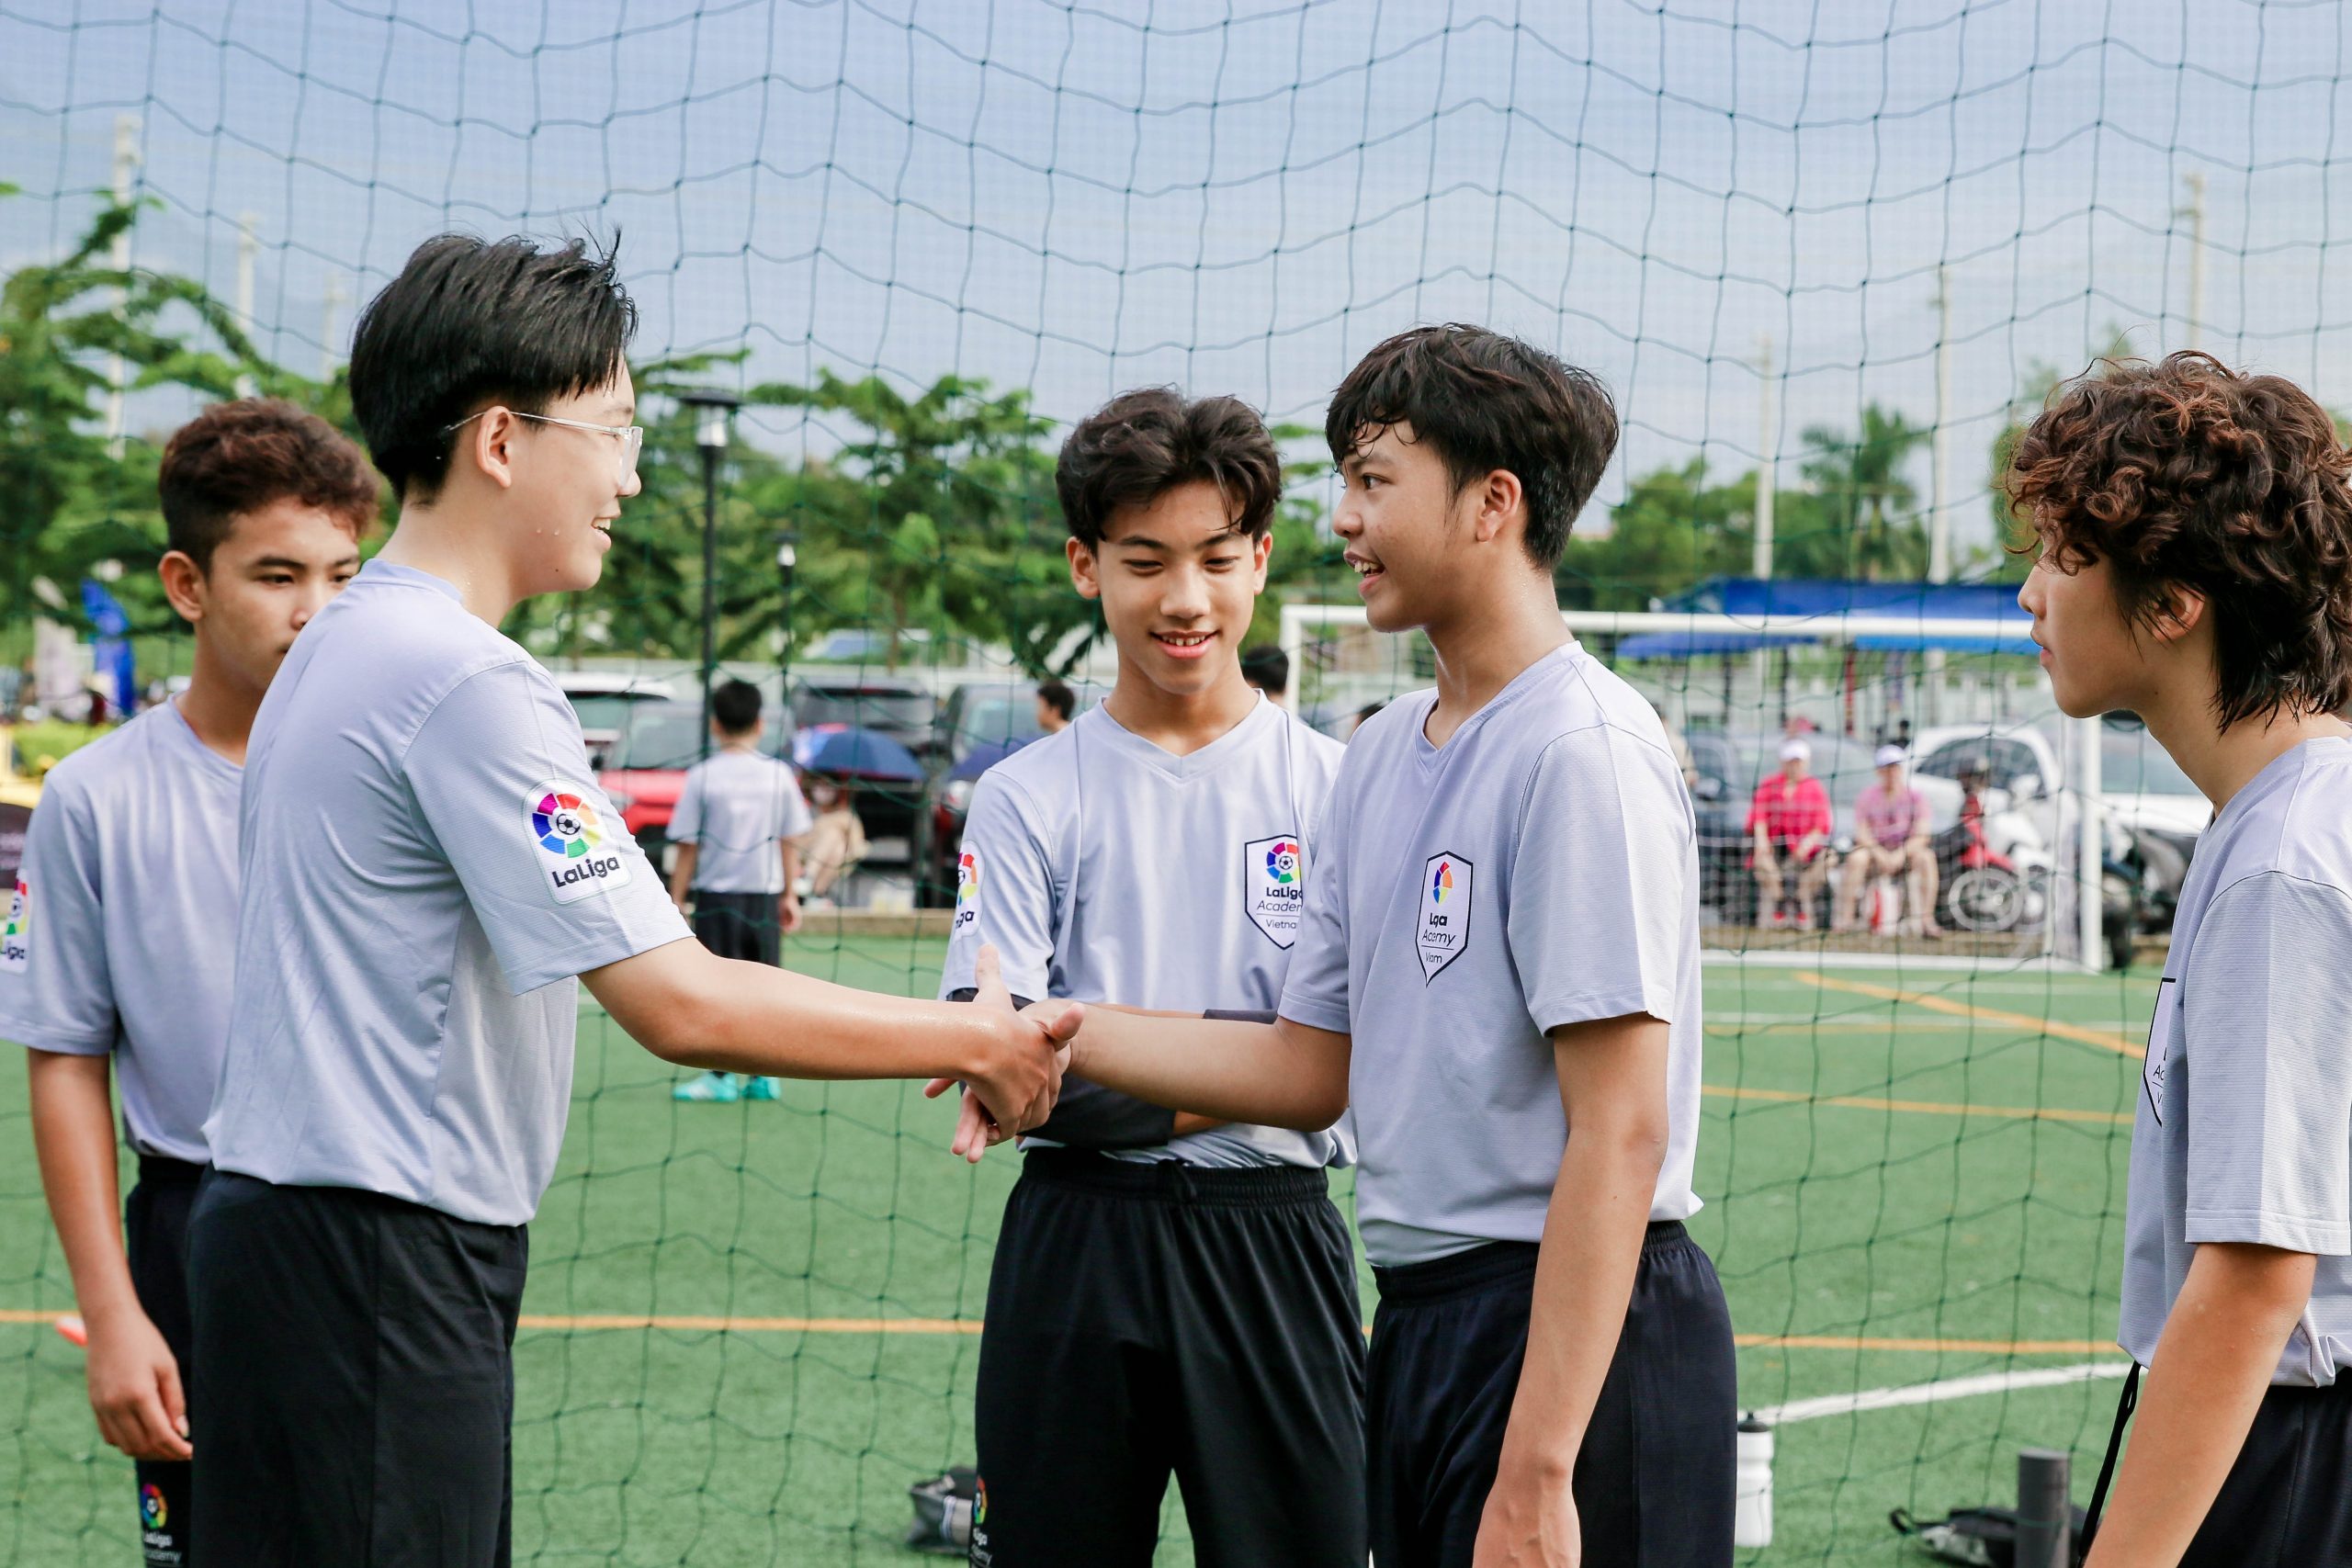 IMG 9807 1 scaled | Laliga Việt Nam - Ươm mầm tài năng bóng đá trẻ